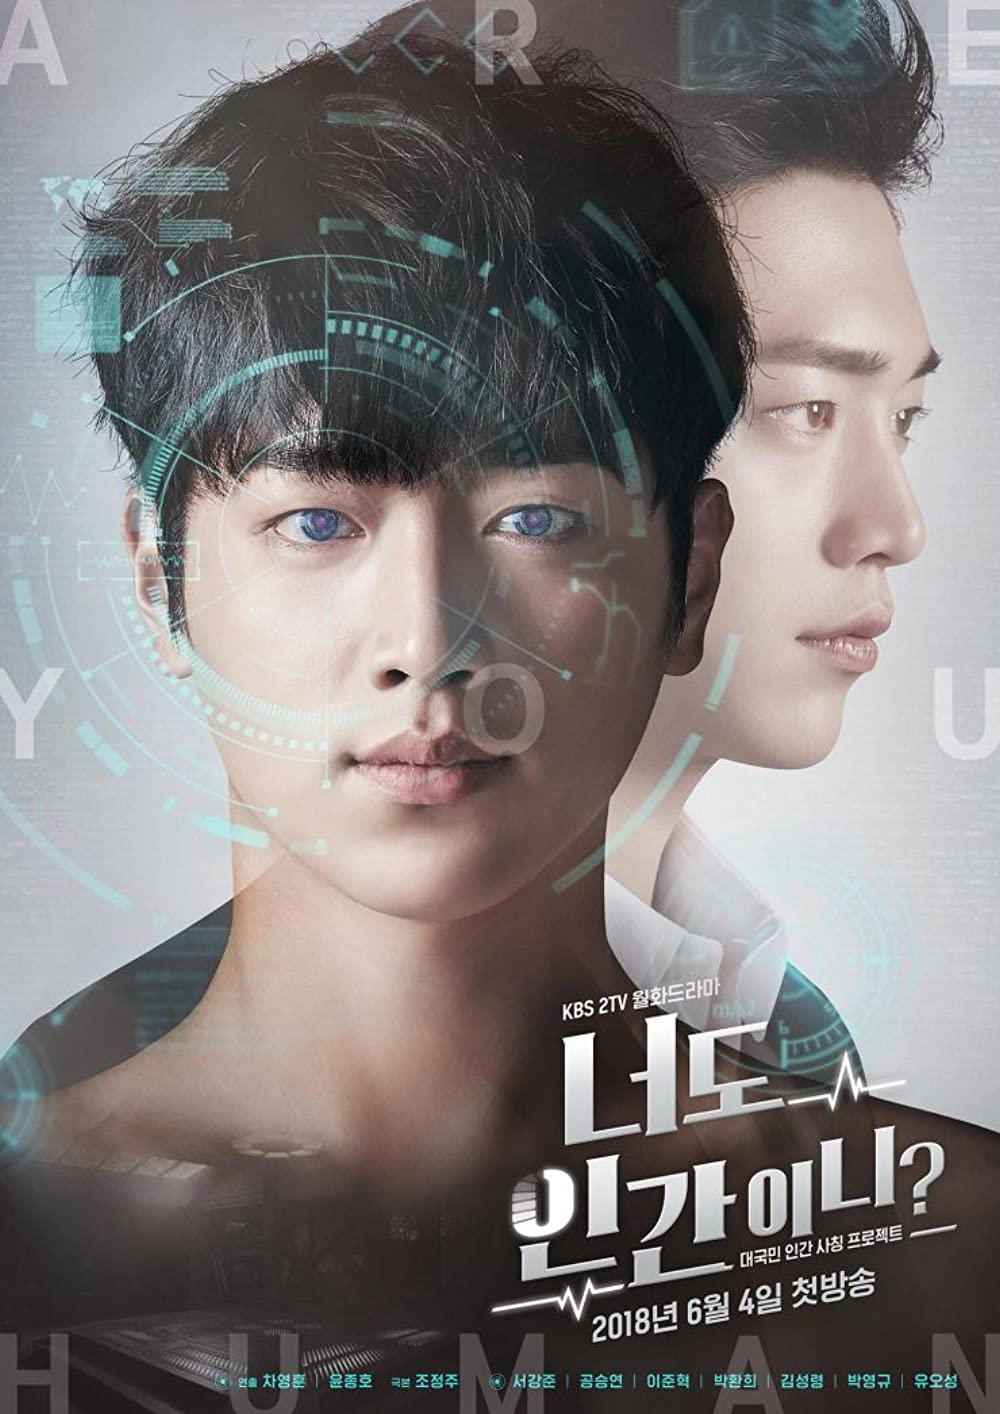 11 Rekomendasi drama Korea tentang teknologi berbalut kisah cinta